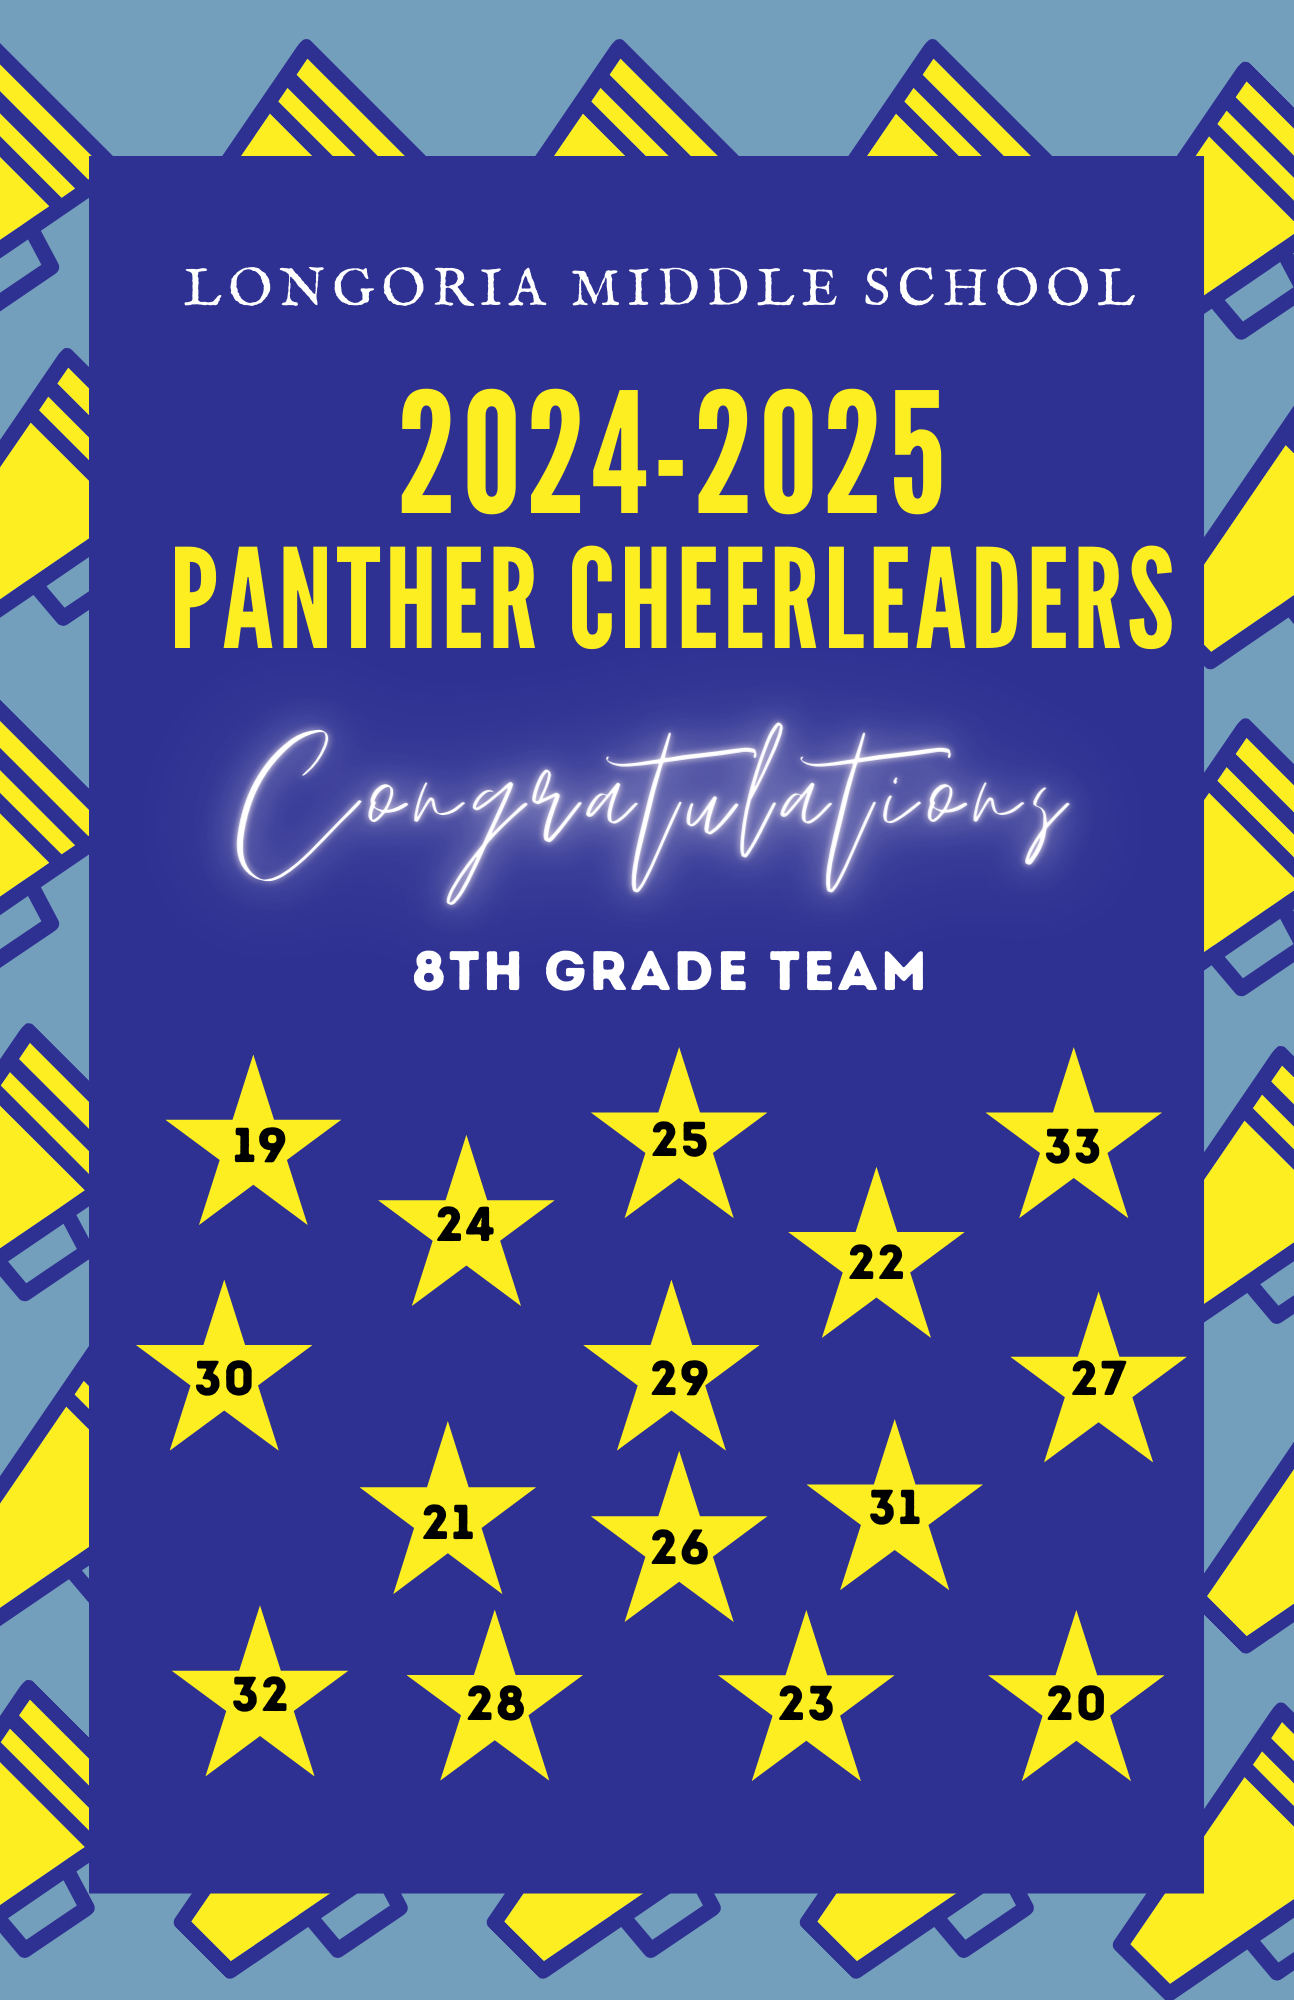 Panther Cheerleaders!